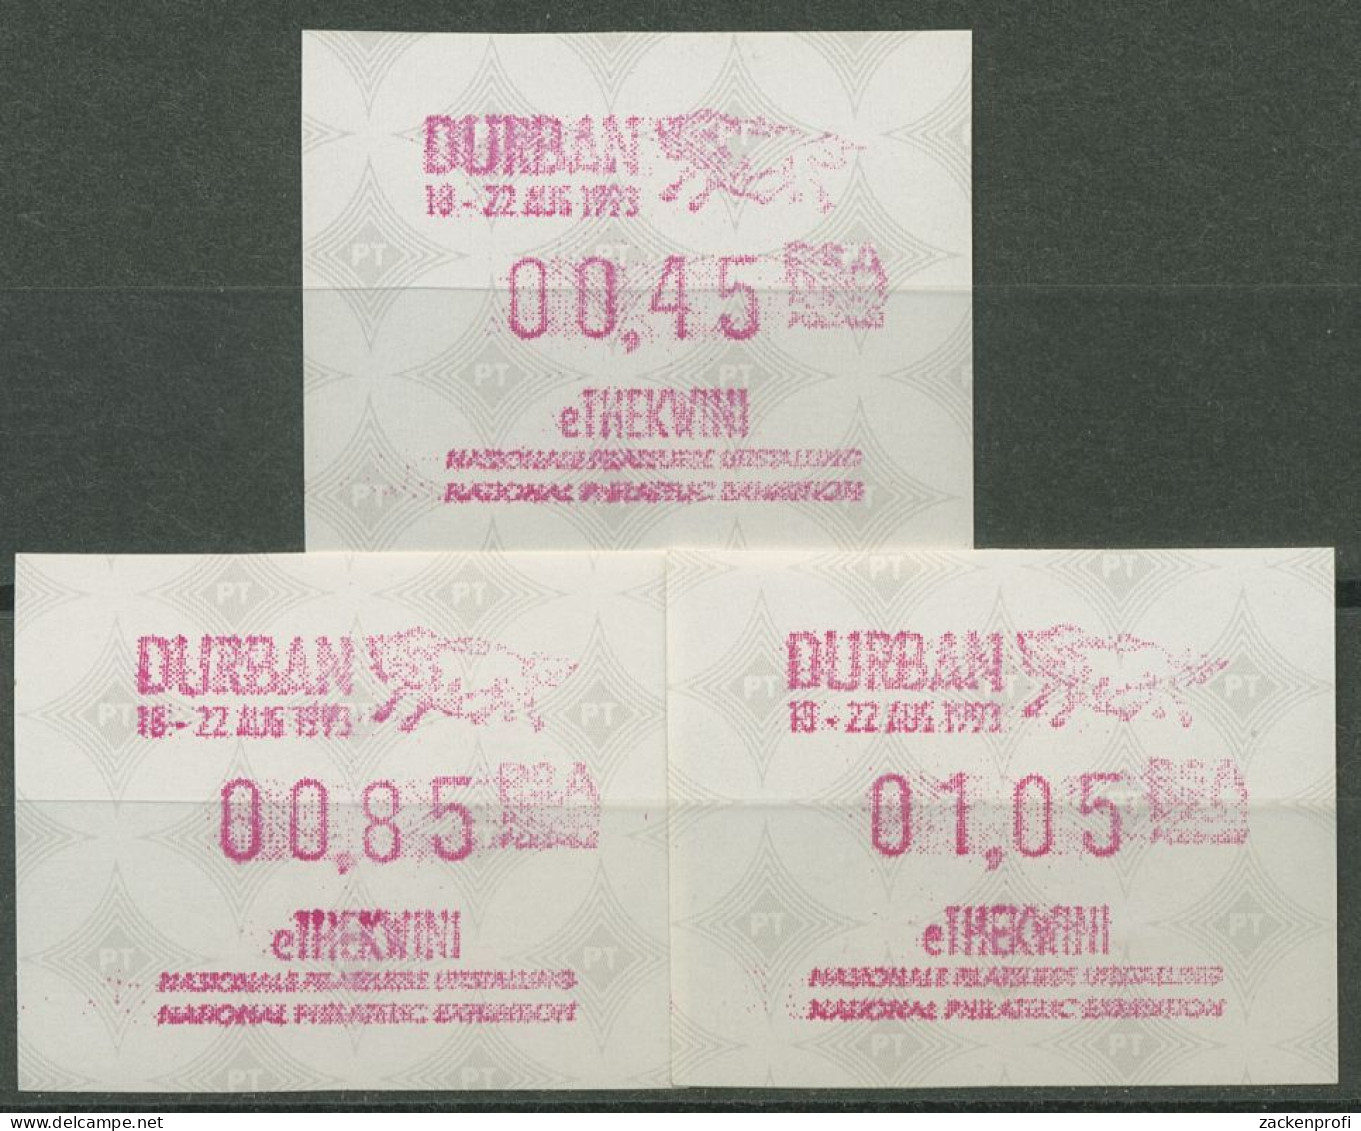 Südafrika ATM 1993 Austellung DURBAN, Satz 3 Werte ATM 12.2 S1 Postfrisch - Vignettes D'affranchissement (Frama)